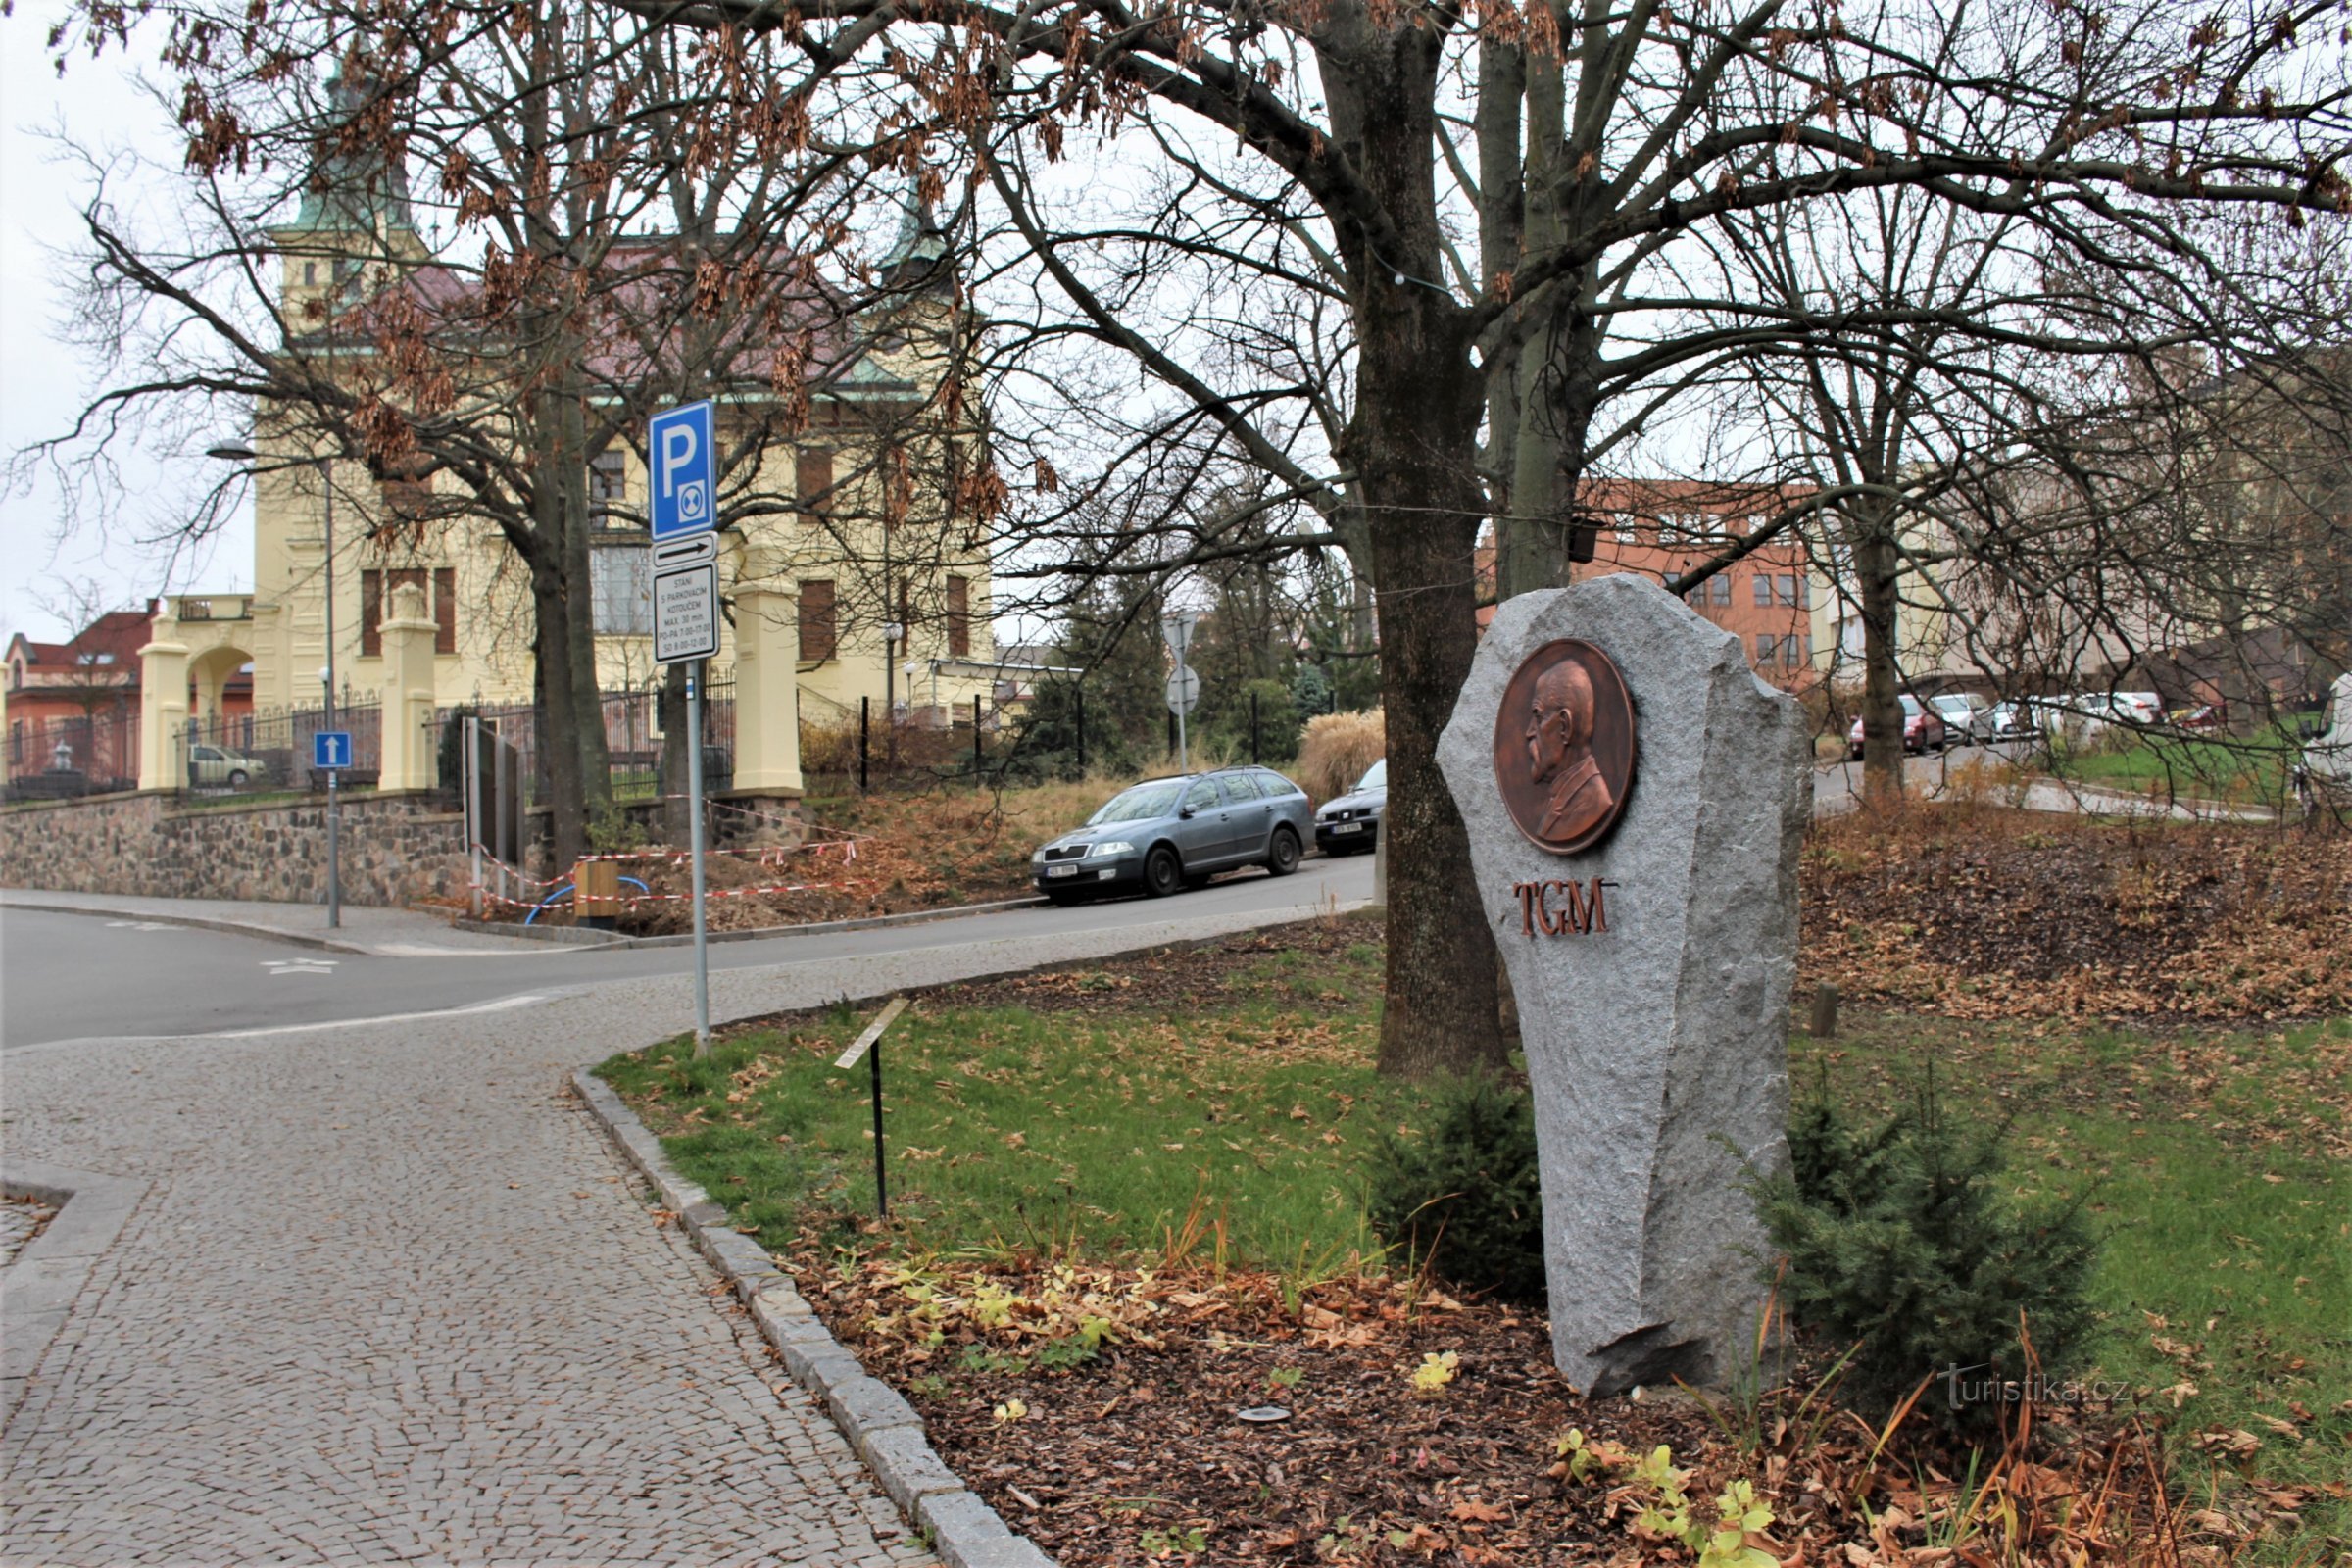 Ústí nad Orlicí - relevo com um retrato de TGM